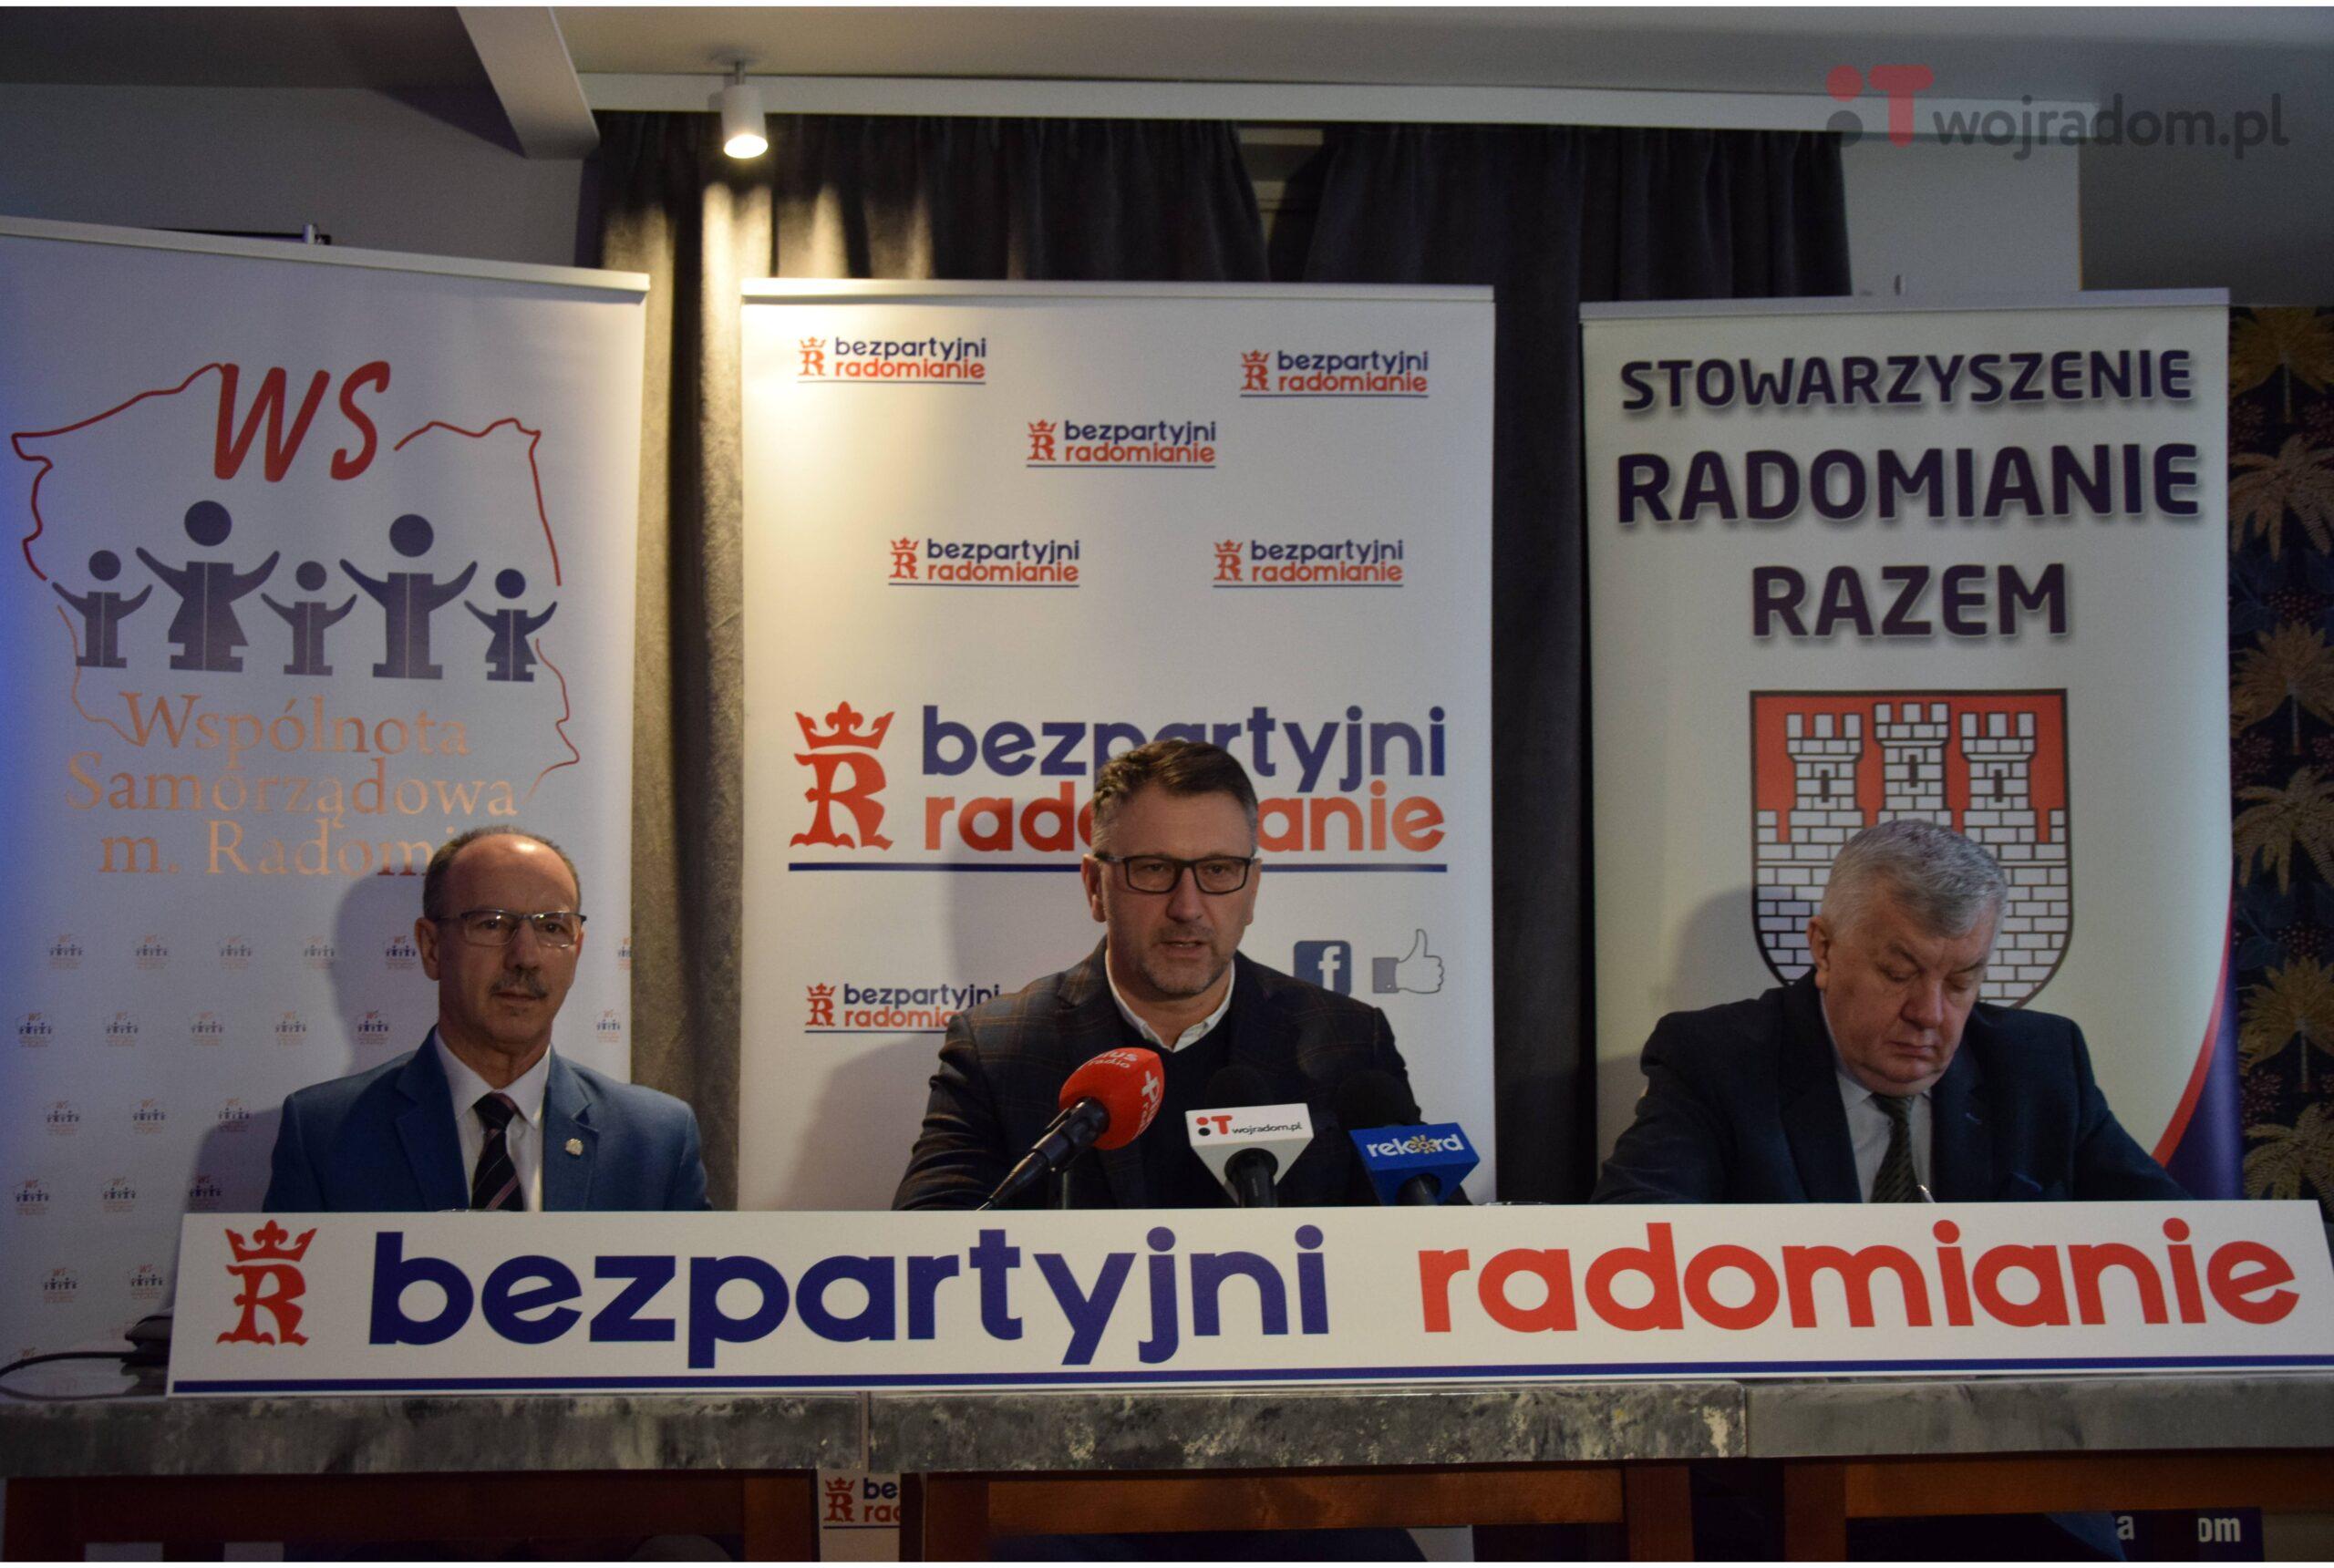 Bezpartyjni Radomianie znowu będą starać się o przyszłość miasta. W trakcie konferencji poruszono m.in. temat aktualnej sytuacji w Radzie Miejskiej w Radomiu.